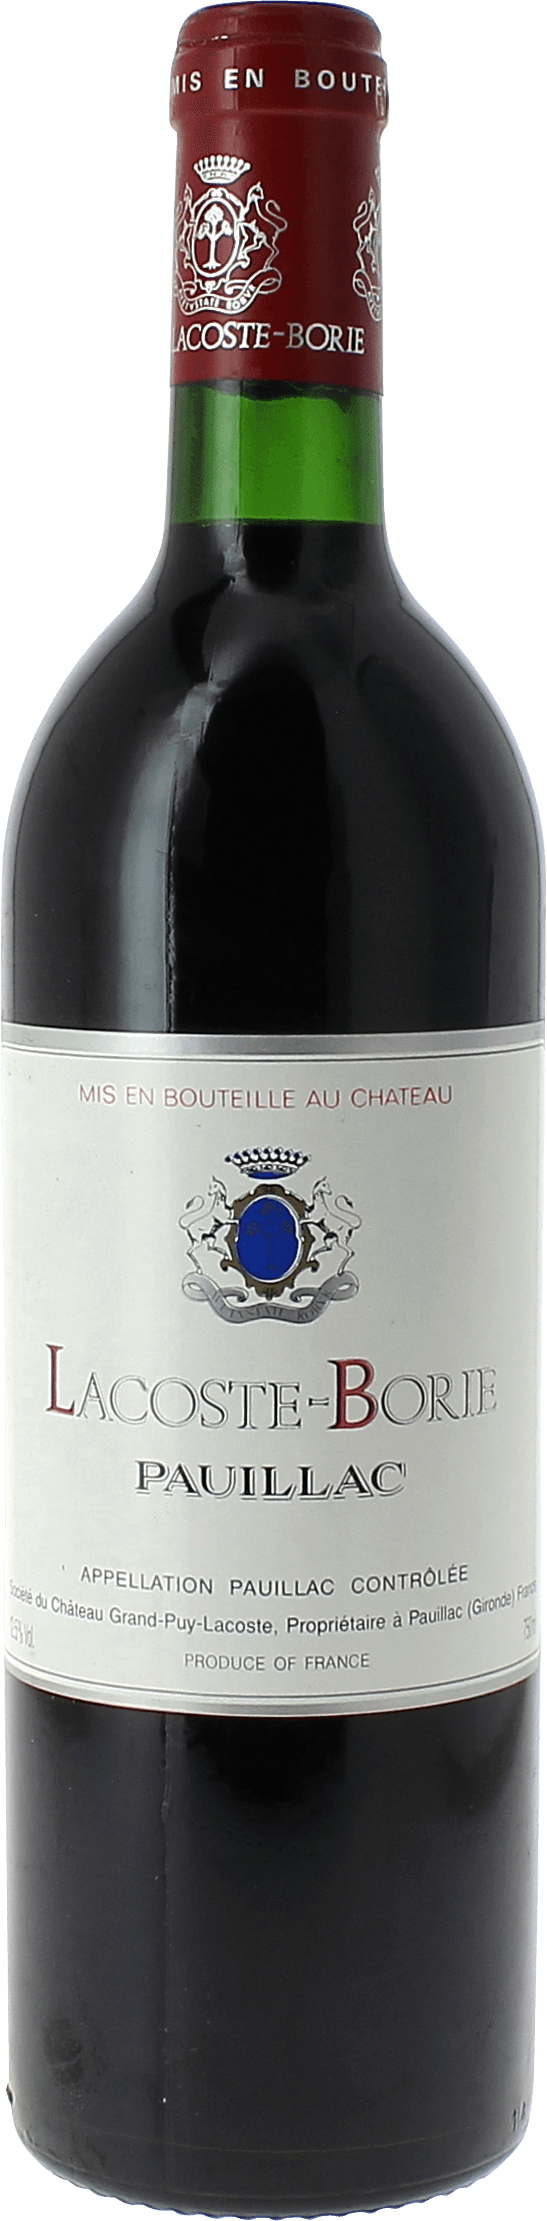 Lacoste borie 2020 5 me Grand cru class Pauillac, Bordeaux rouge